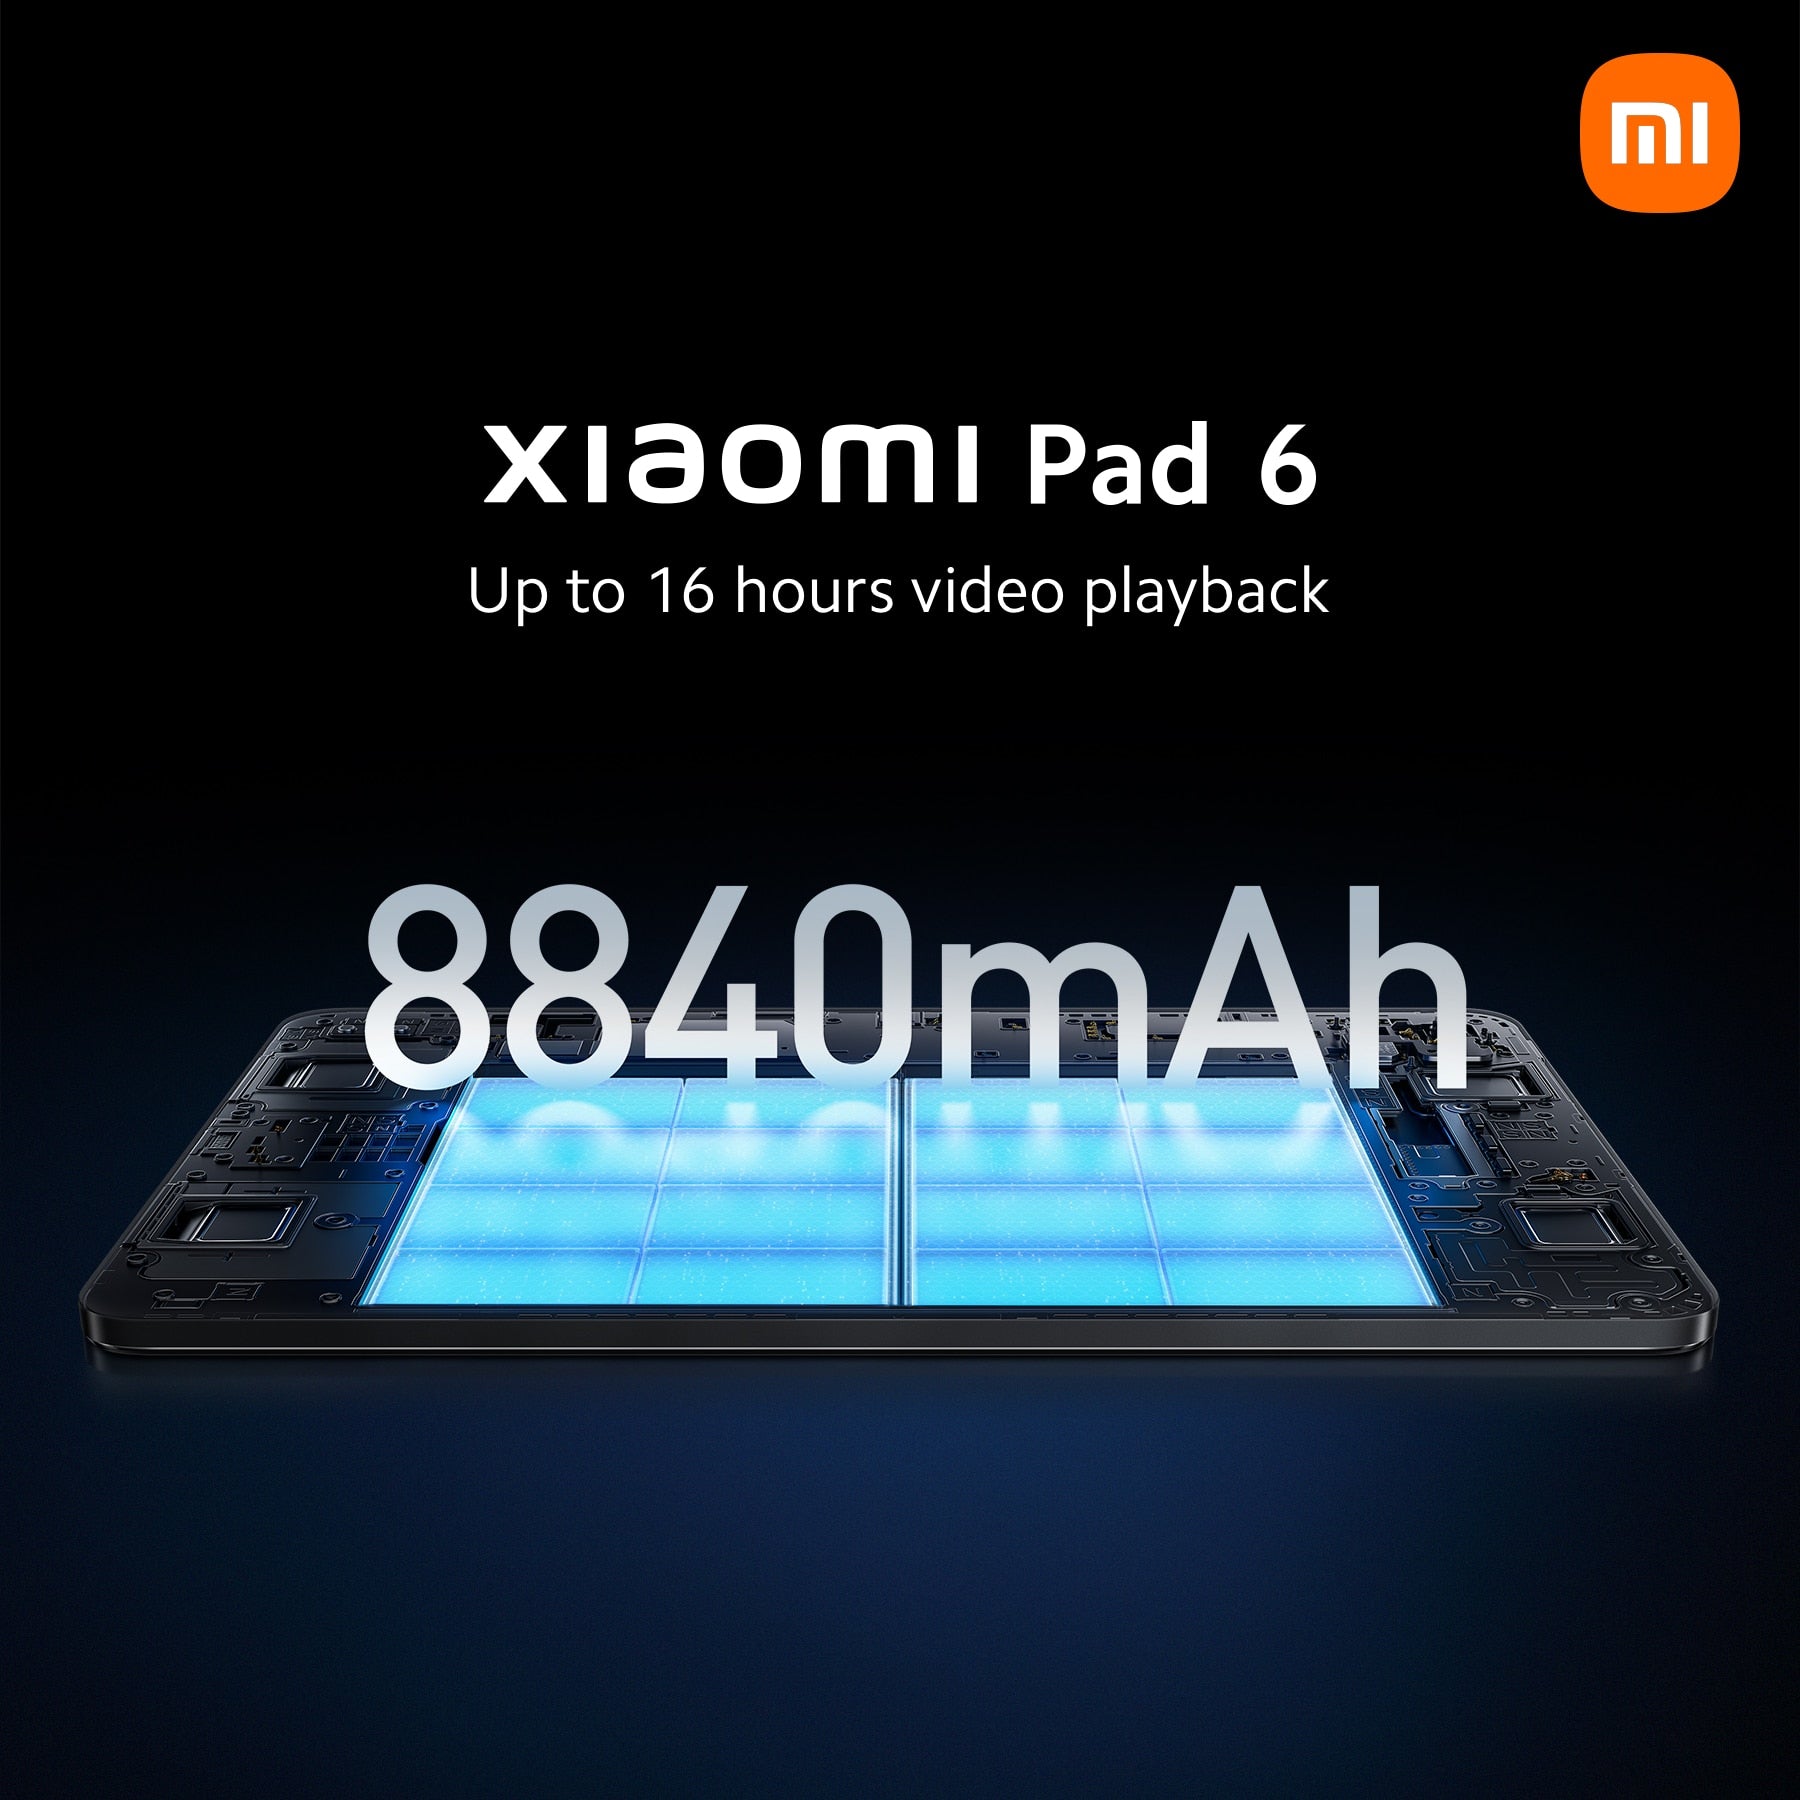 Xiaomi Pad 6 Global Version 128GB/256GB Snapdragon 870 Processor 144Hz WQHD+ 8840mAh 33W Fast Charging Tablet